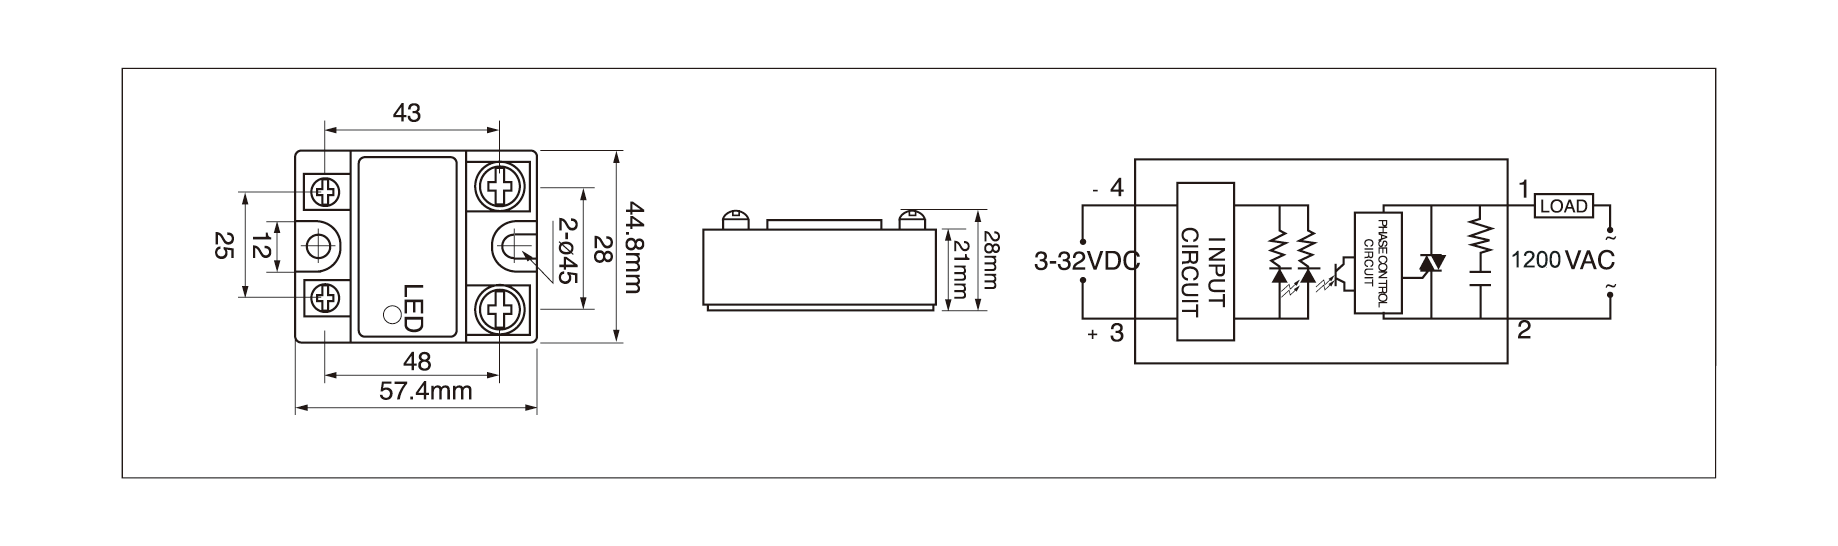 Dimension and circuit diagram - MGR 1D120 series